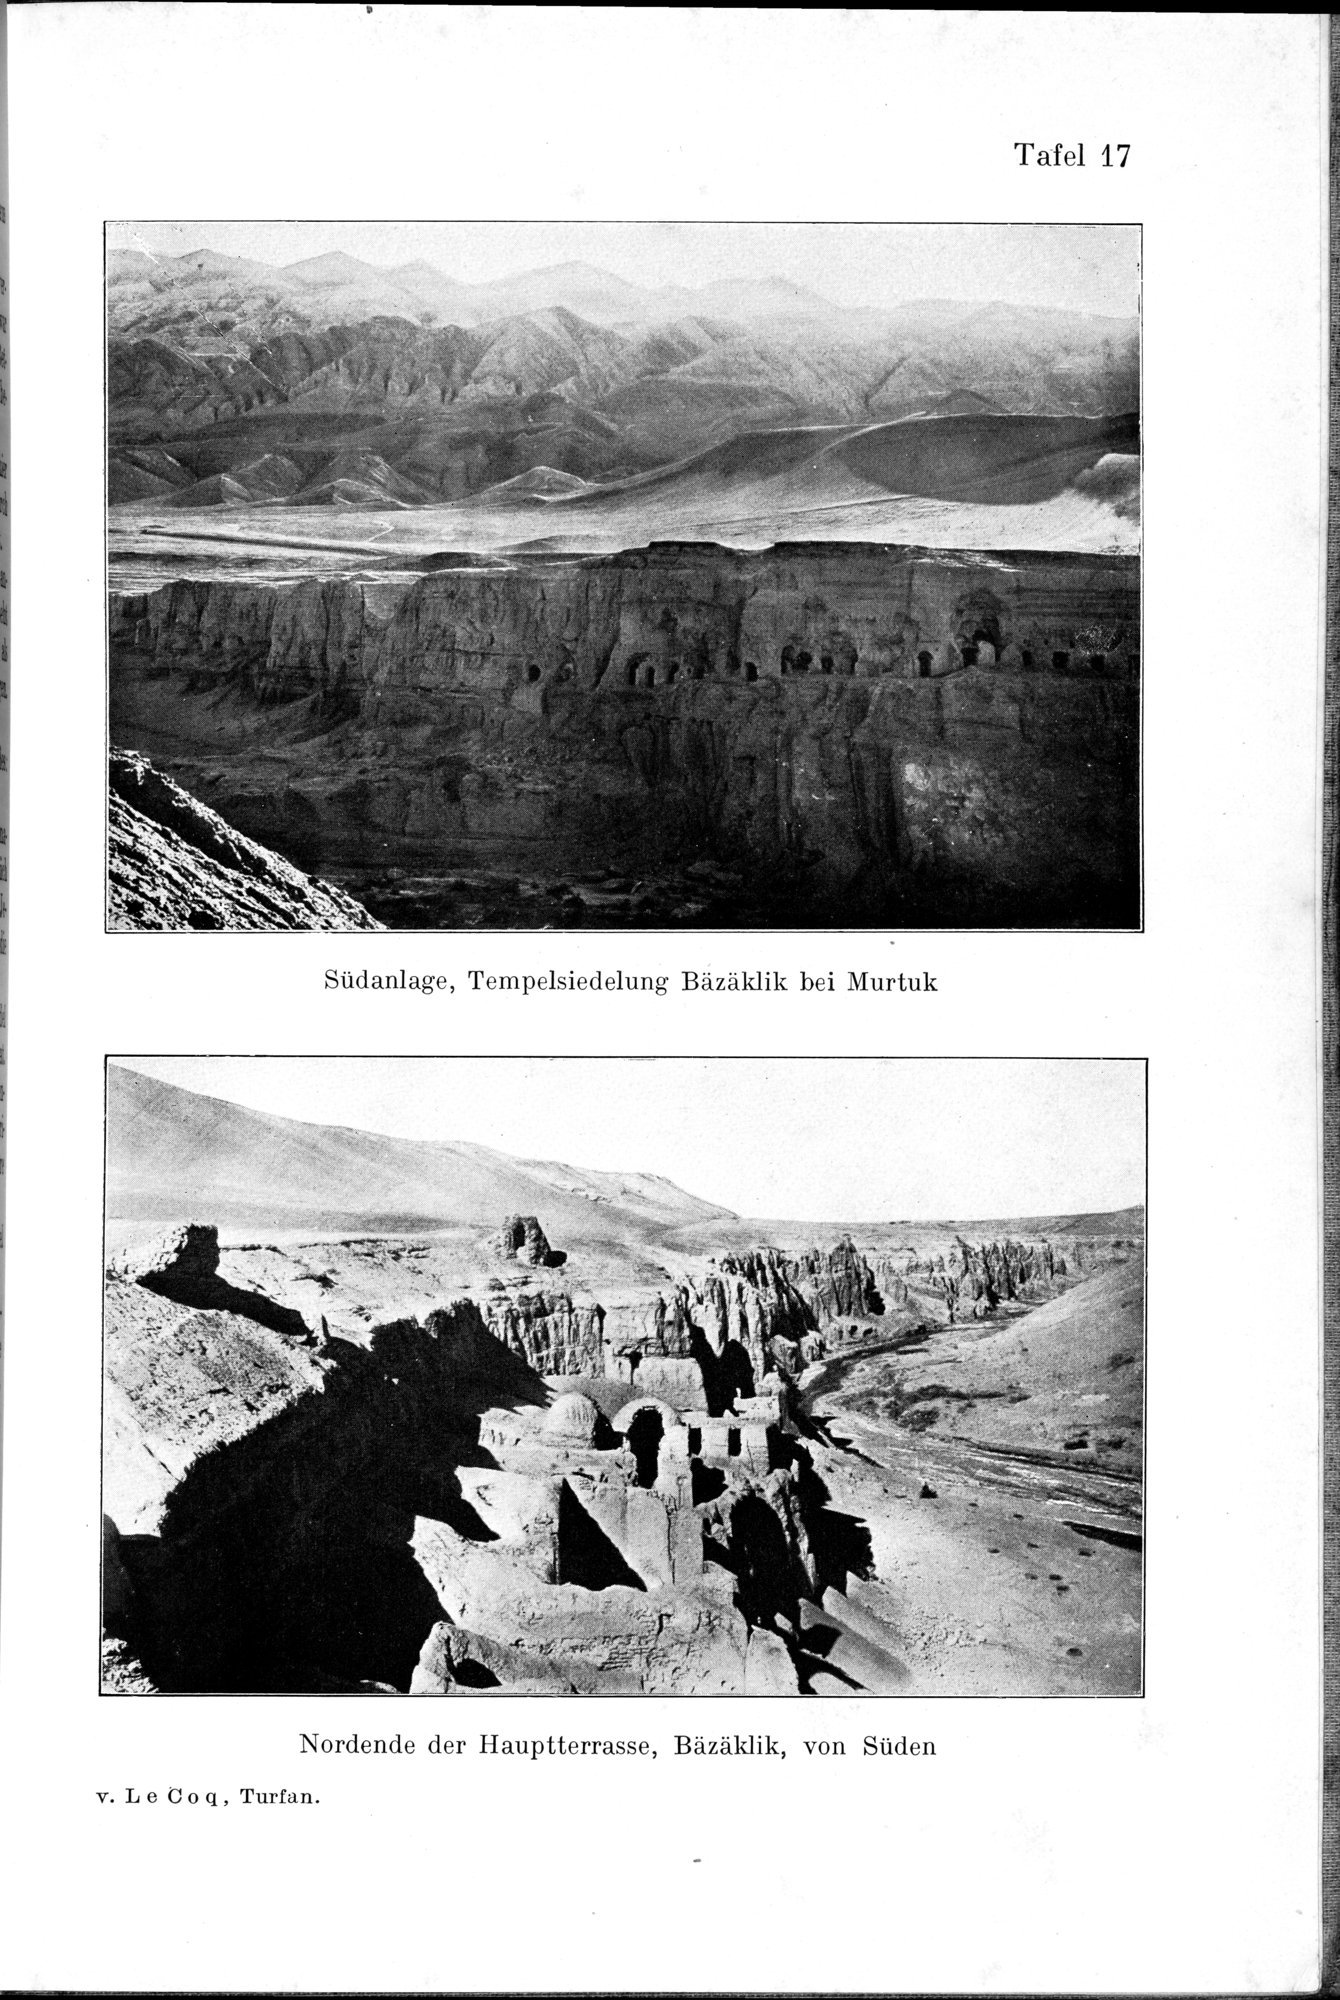 Auf Hellas Spuren in Ostturkistan : vol.1 / Page 97 (Grayscale High Resolution Image)